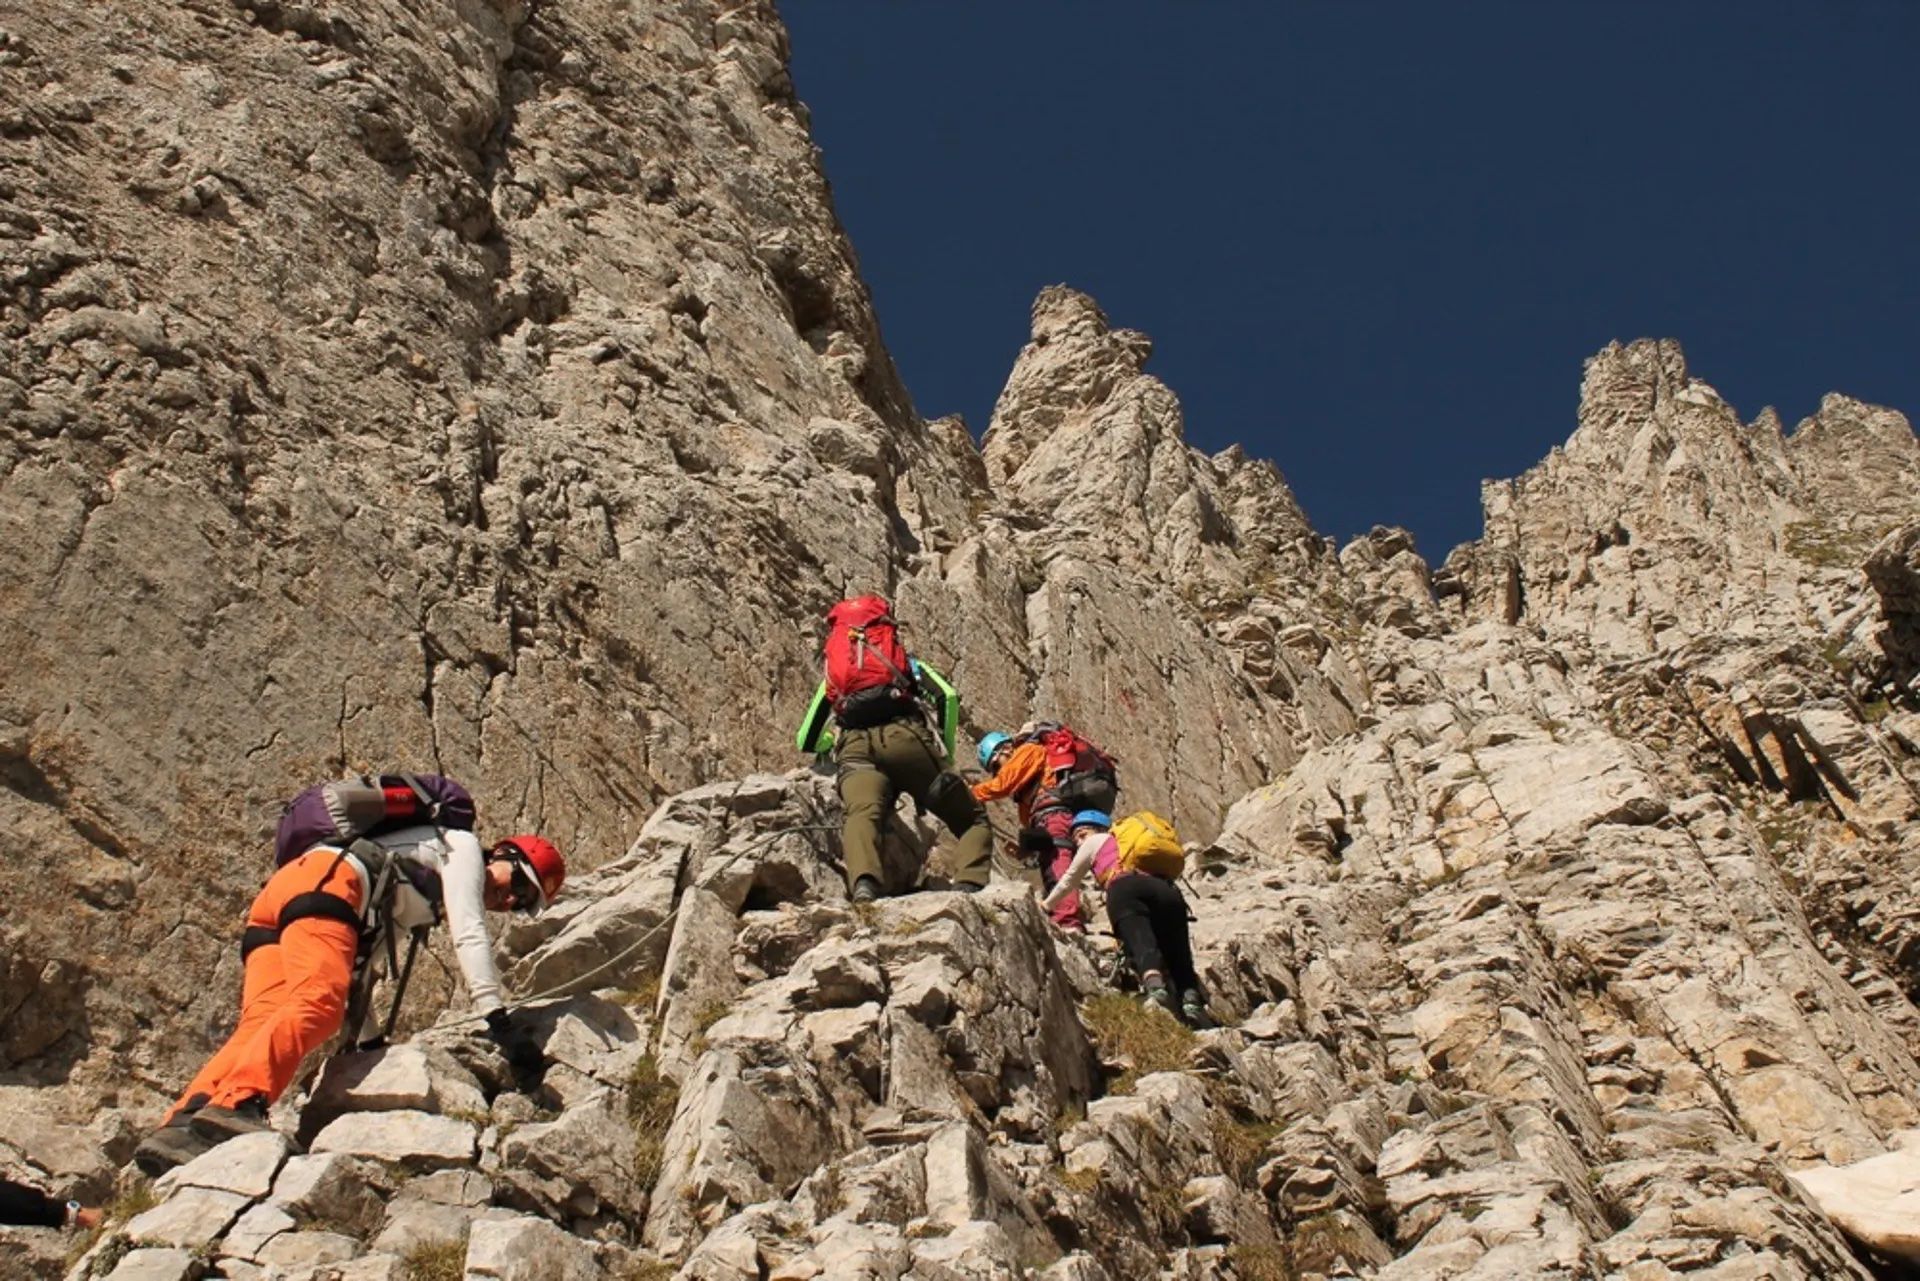 Hikers scrambling up to the peak of Mount Olympus.